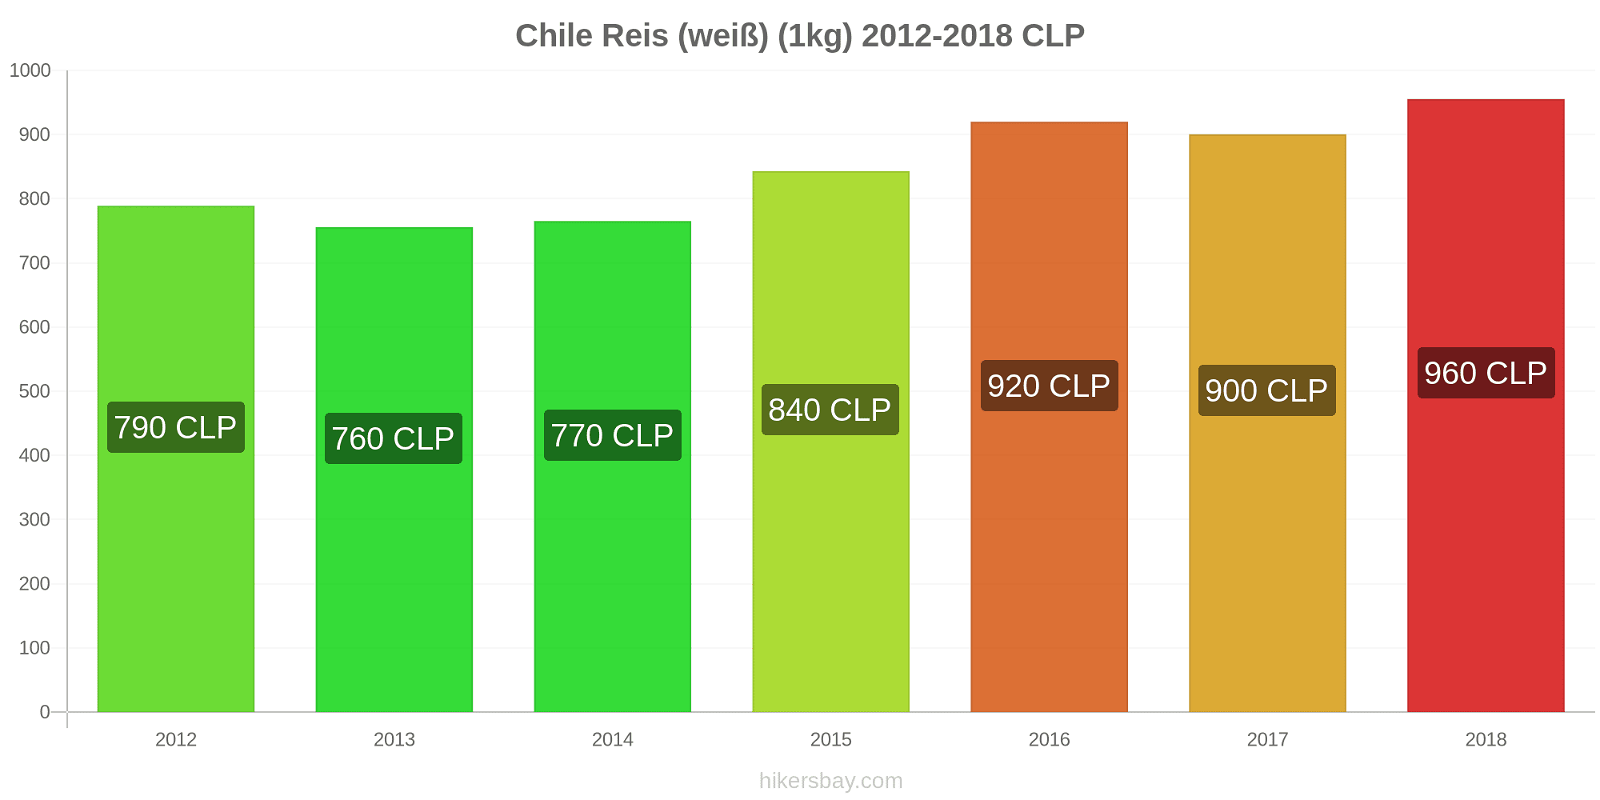 Chile Preisänderungen Reis (weiß) (1kg) hikersbay.com